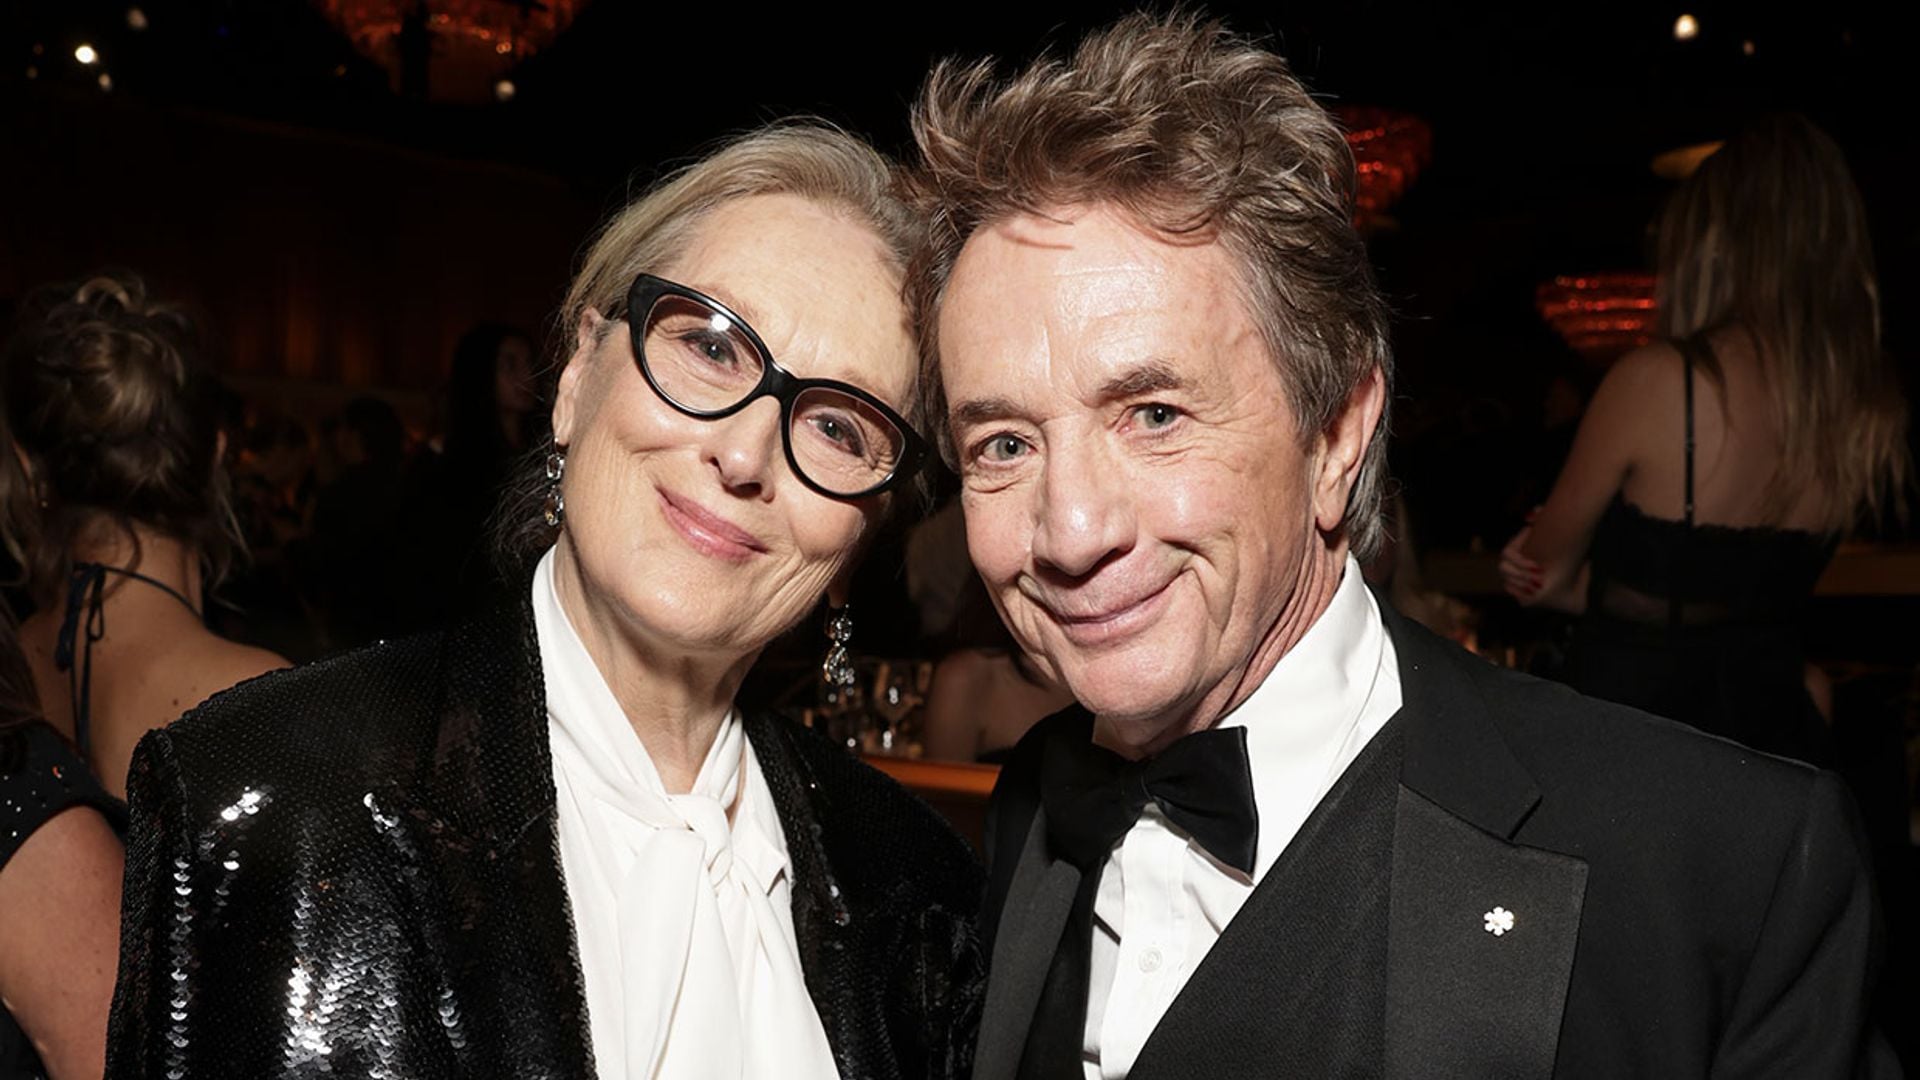 ¿Están saliendo Meryl Streep y Martin Short? El actor se ha pronunciado